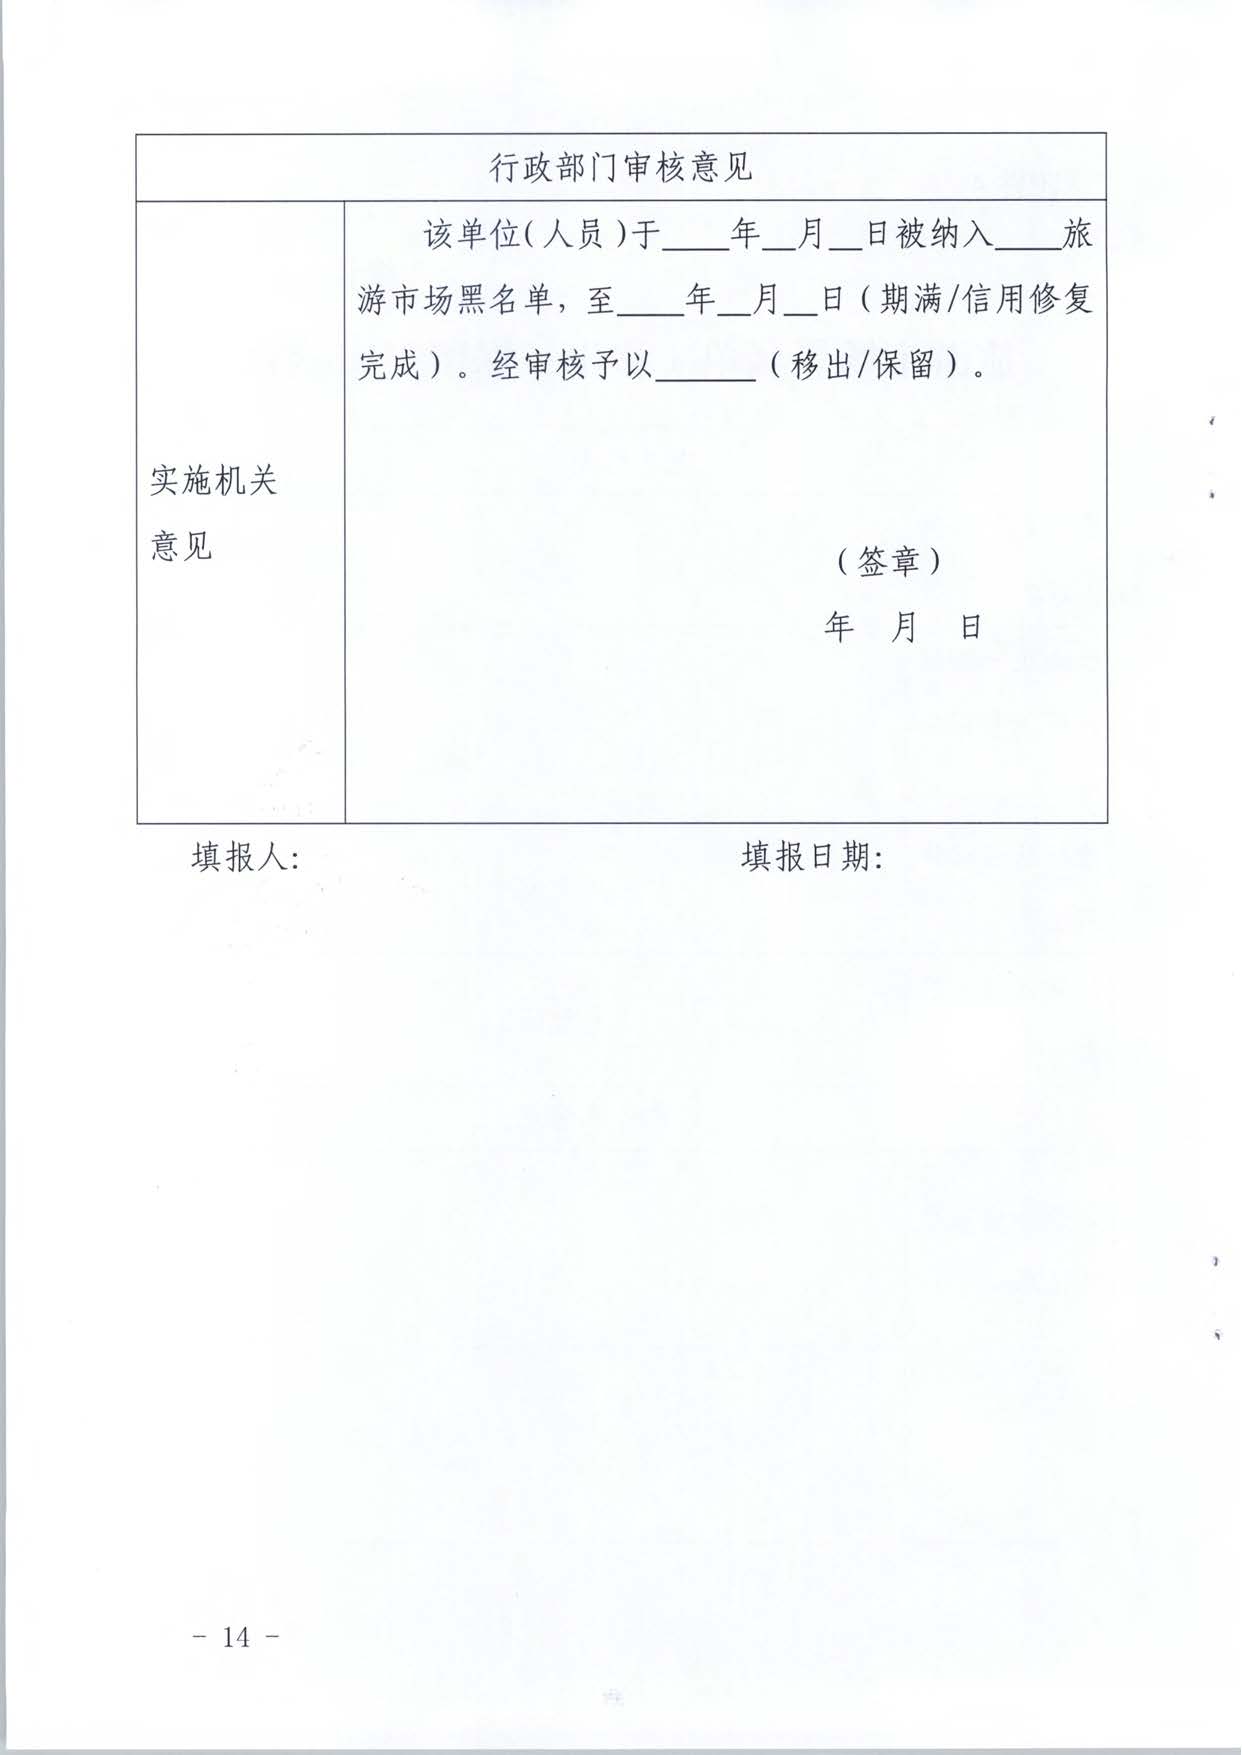 广东省文化和旅游厅关于推进文化和旅游市场信用修复工作的通知_页面_33.jpg